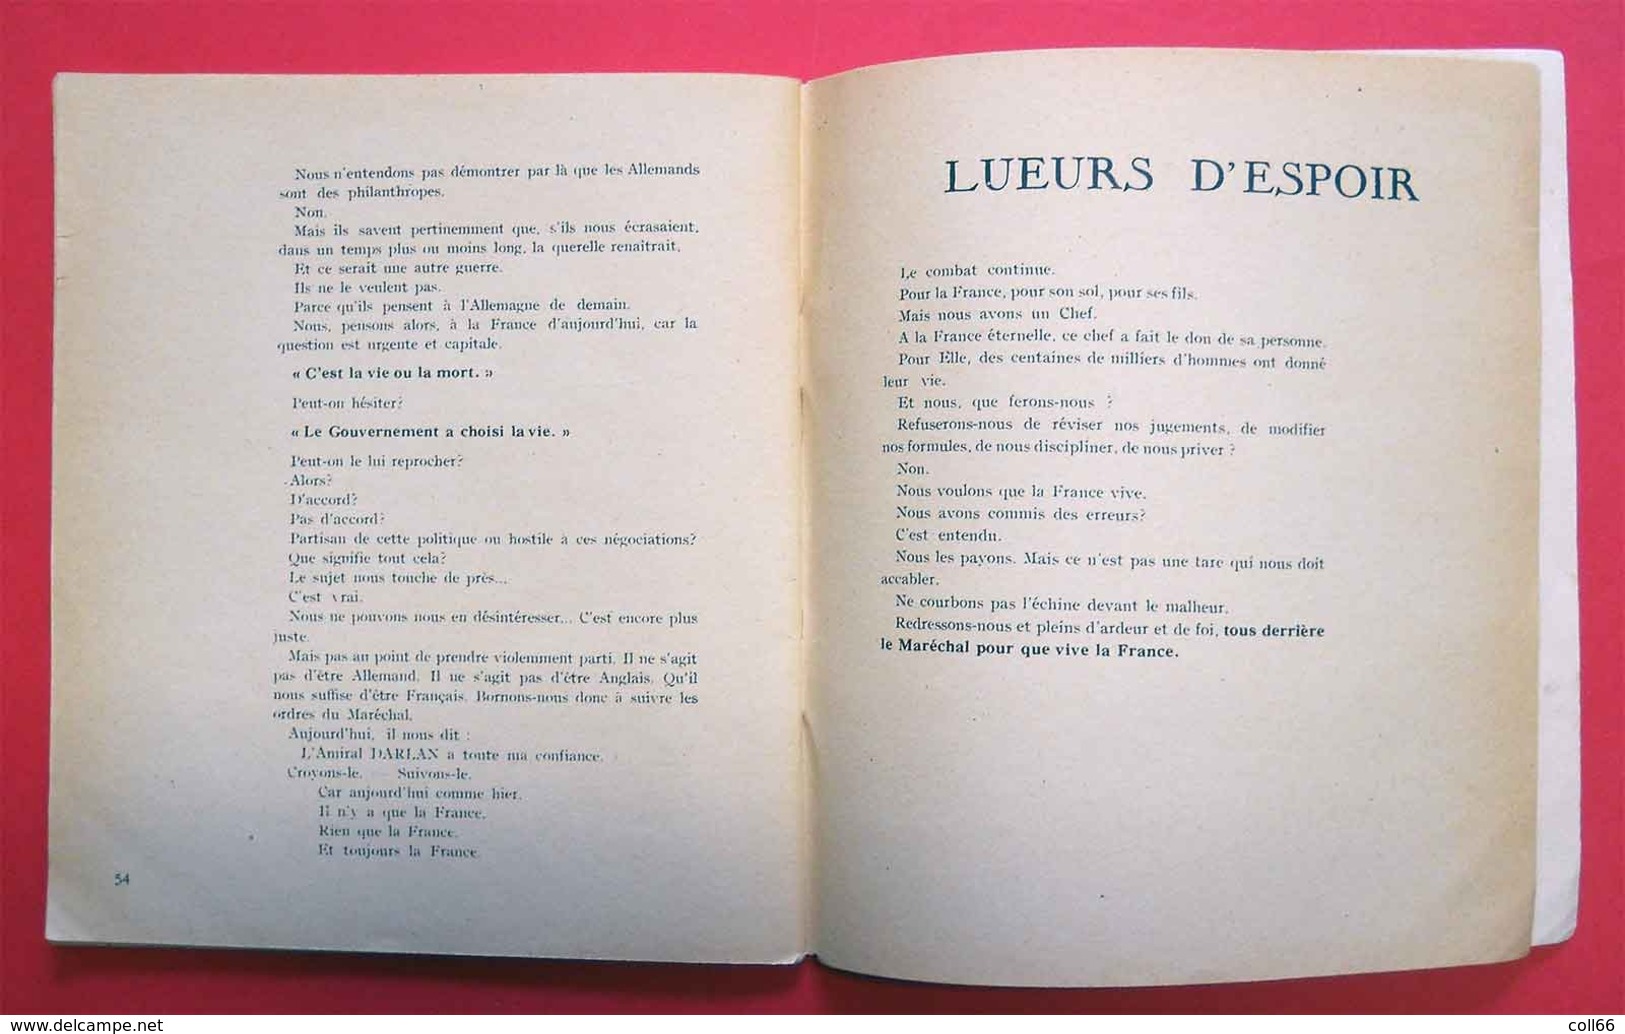 Ww2 Propagande 1941 L'Oeuvre Du Maréchal Pétain Francisque Edition Presses De L'Imprimerie Régionale - Documents